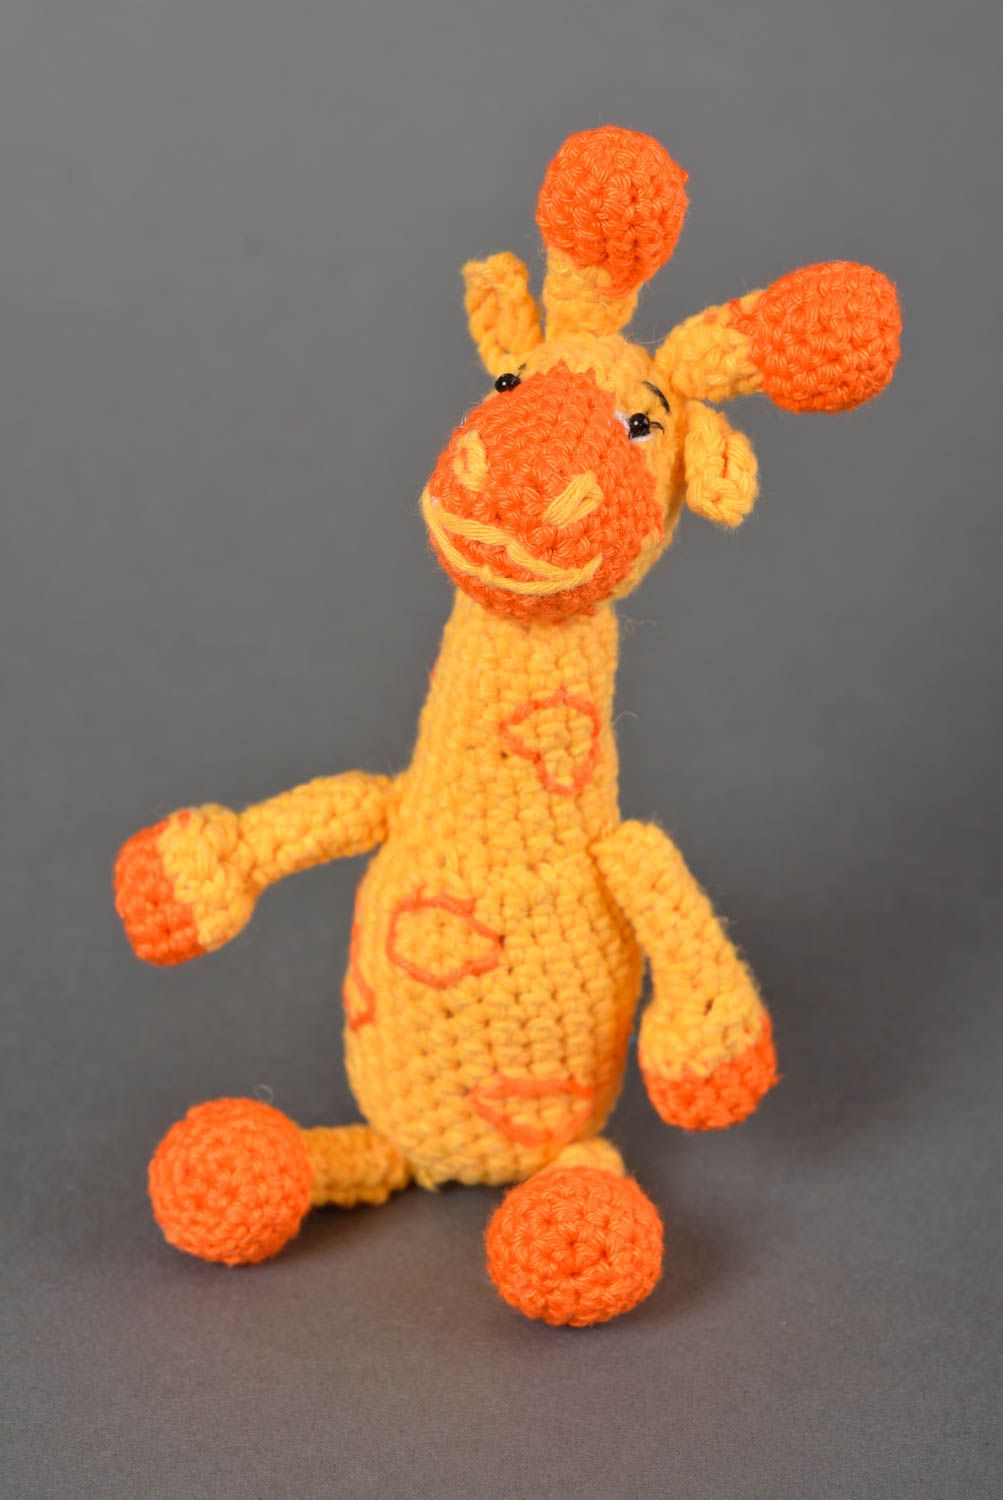 Handmade Häkel Kuscheltier Rassel Spielzeug Geschenk Idee Giraffe lustig foto 1